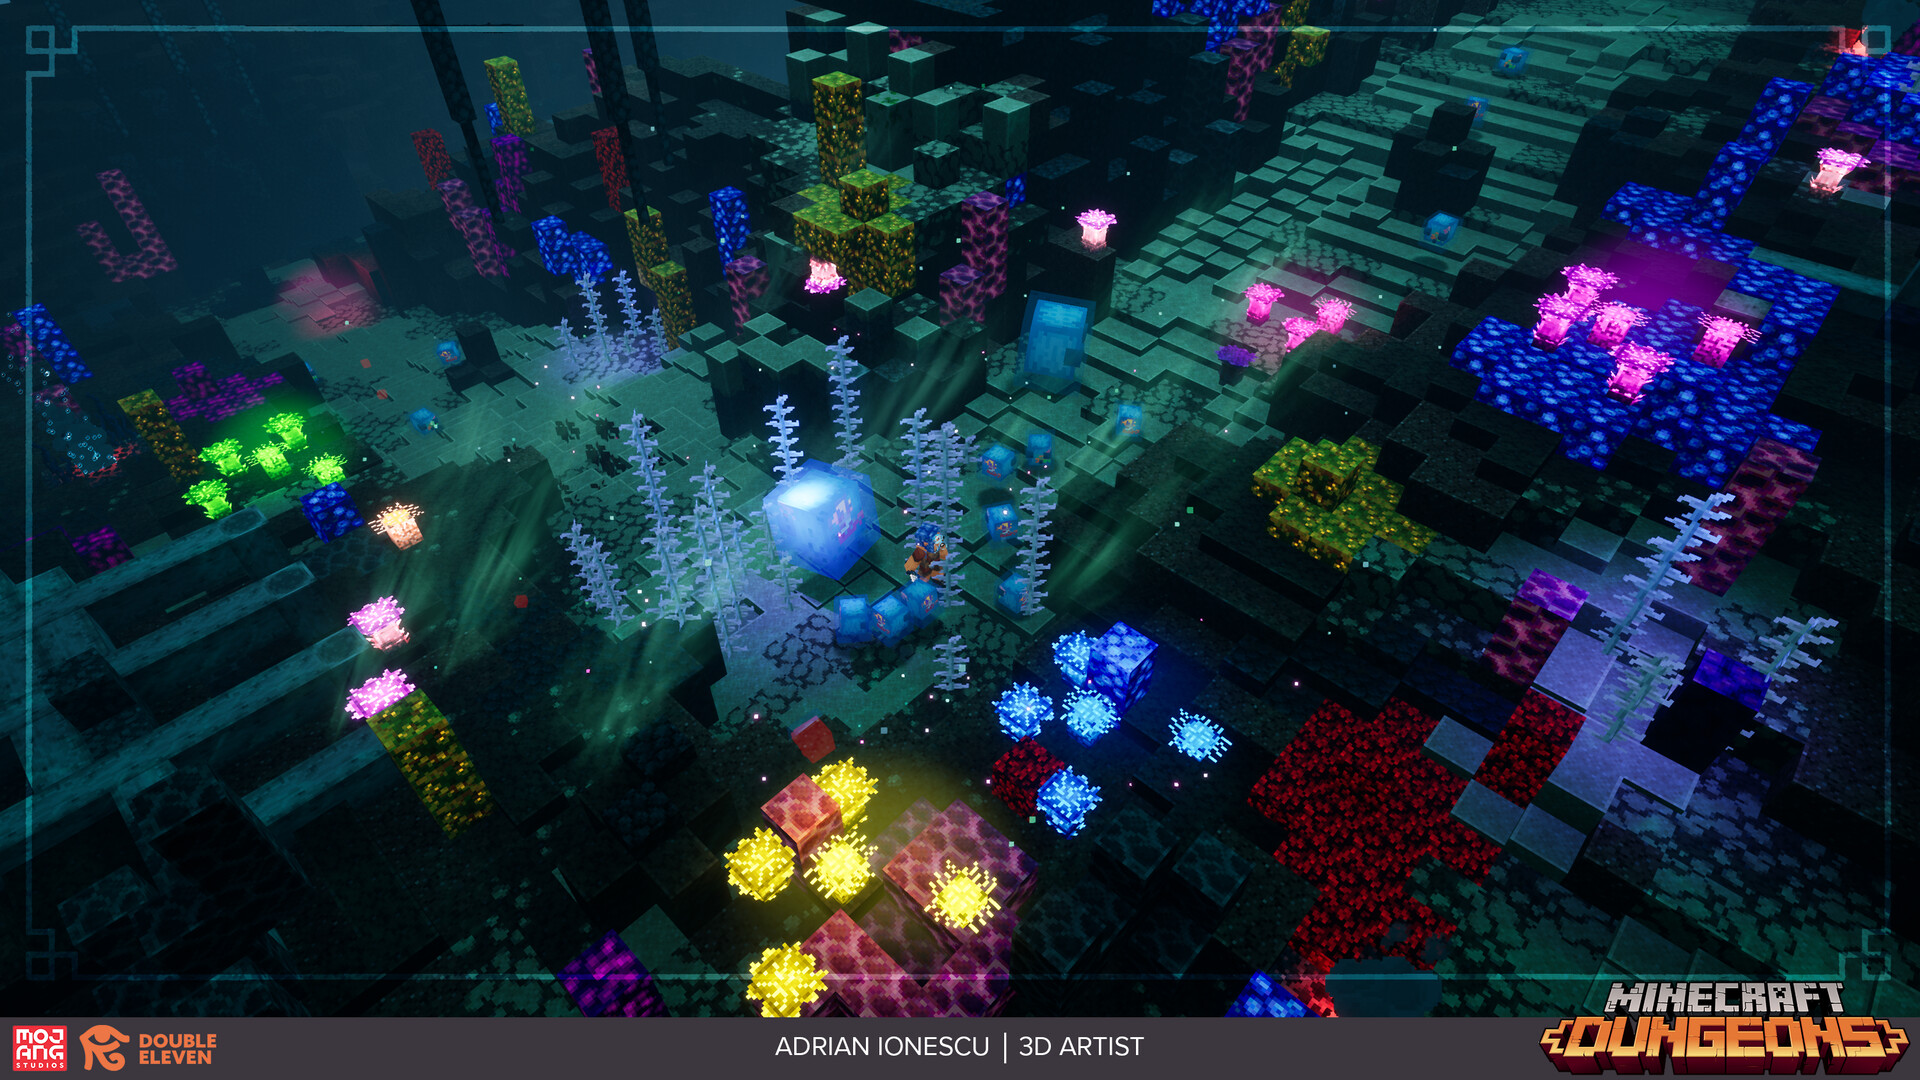 ArtStation - Minecraft Dungeons: Hidden Depths & Echoing Void